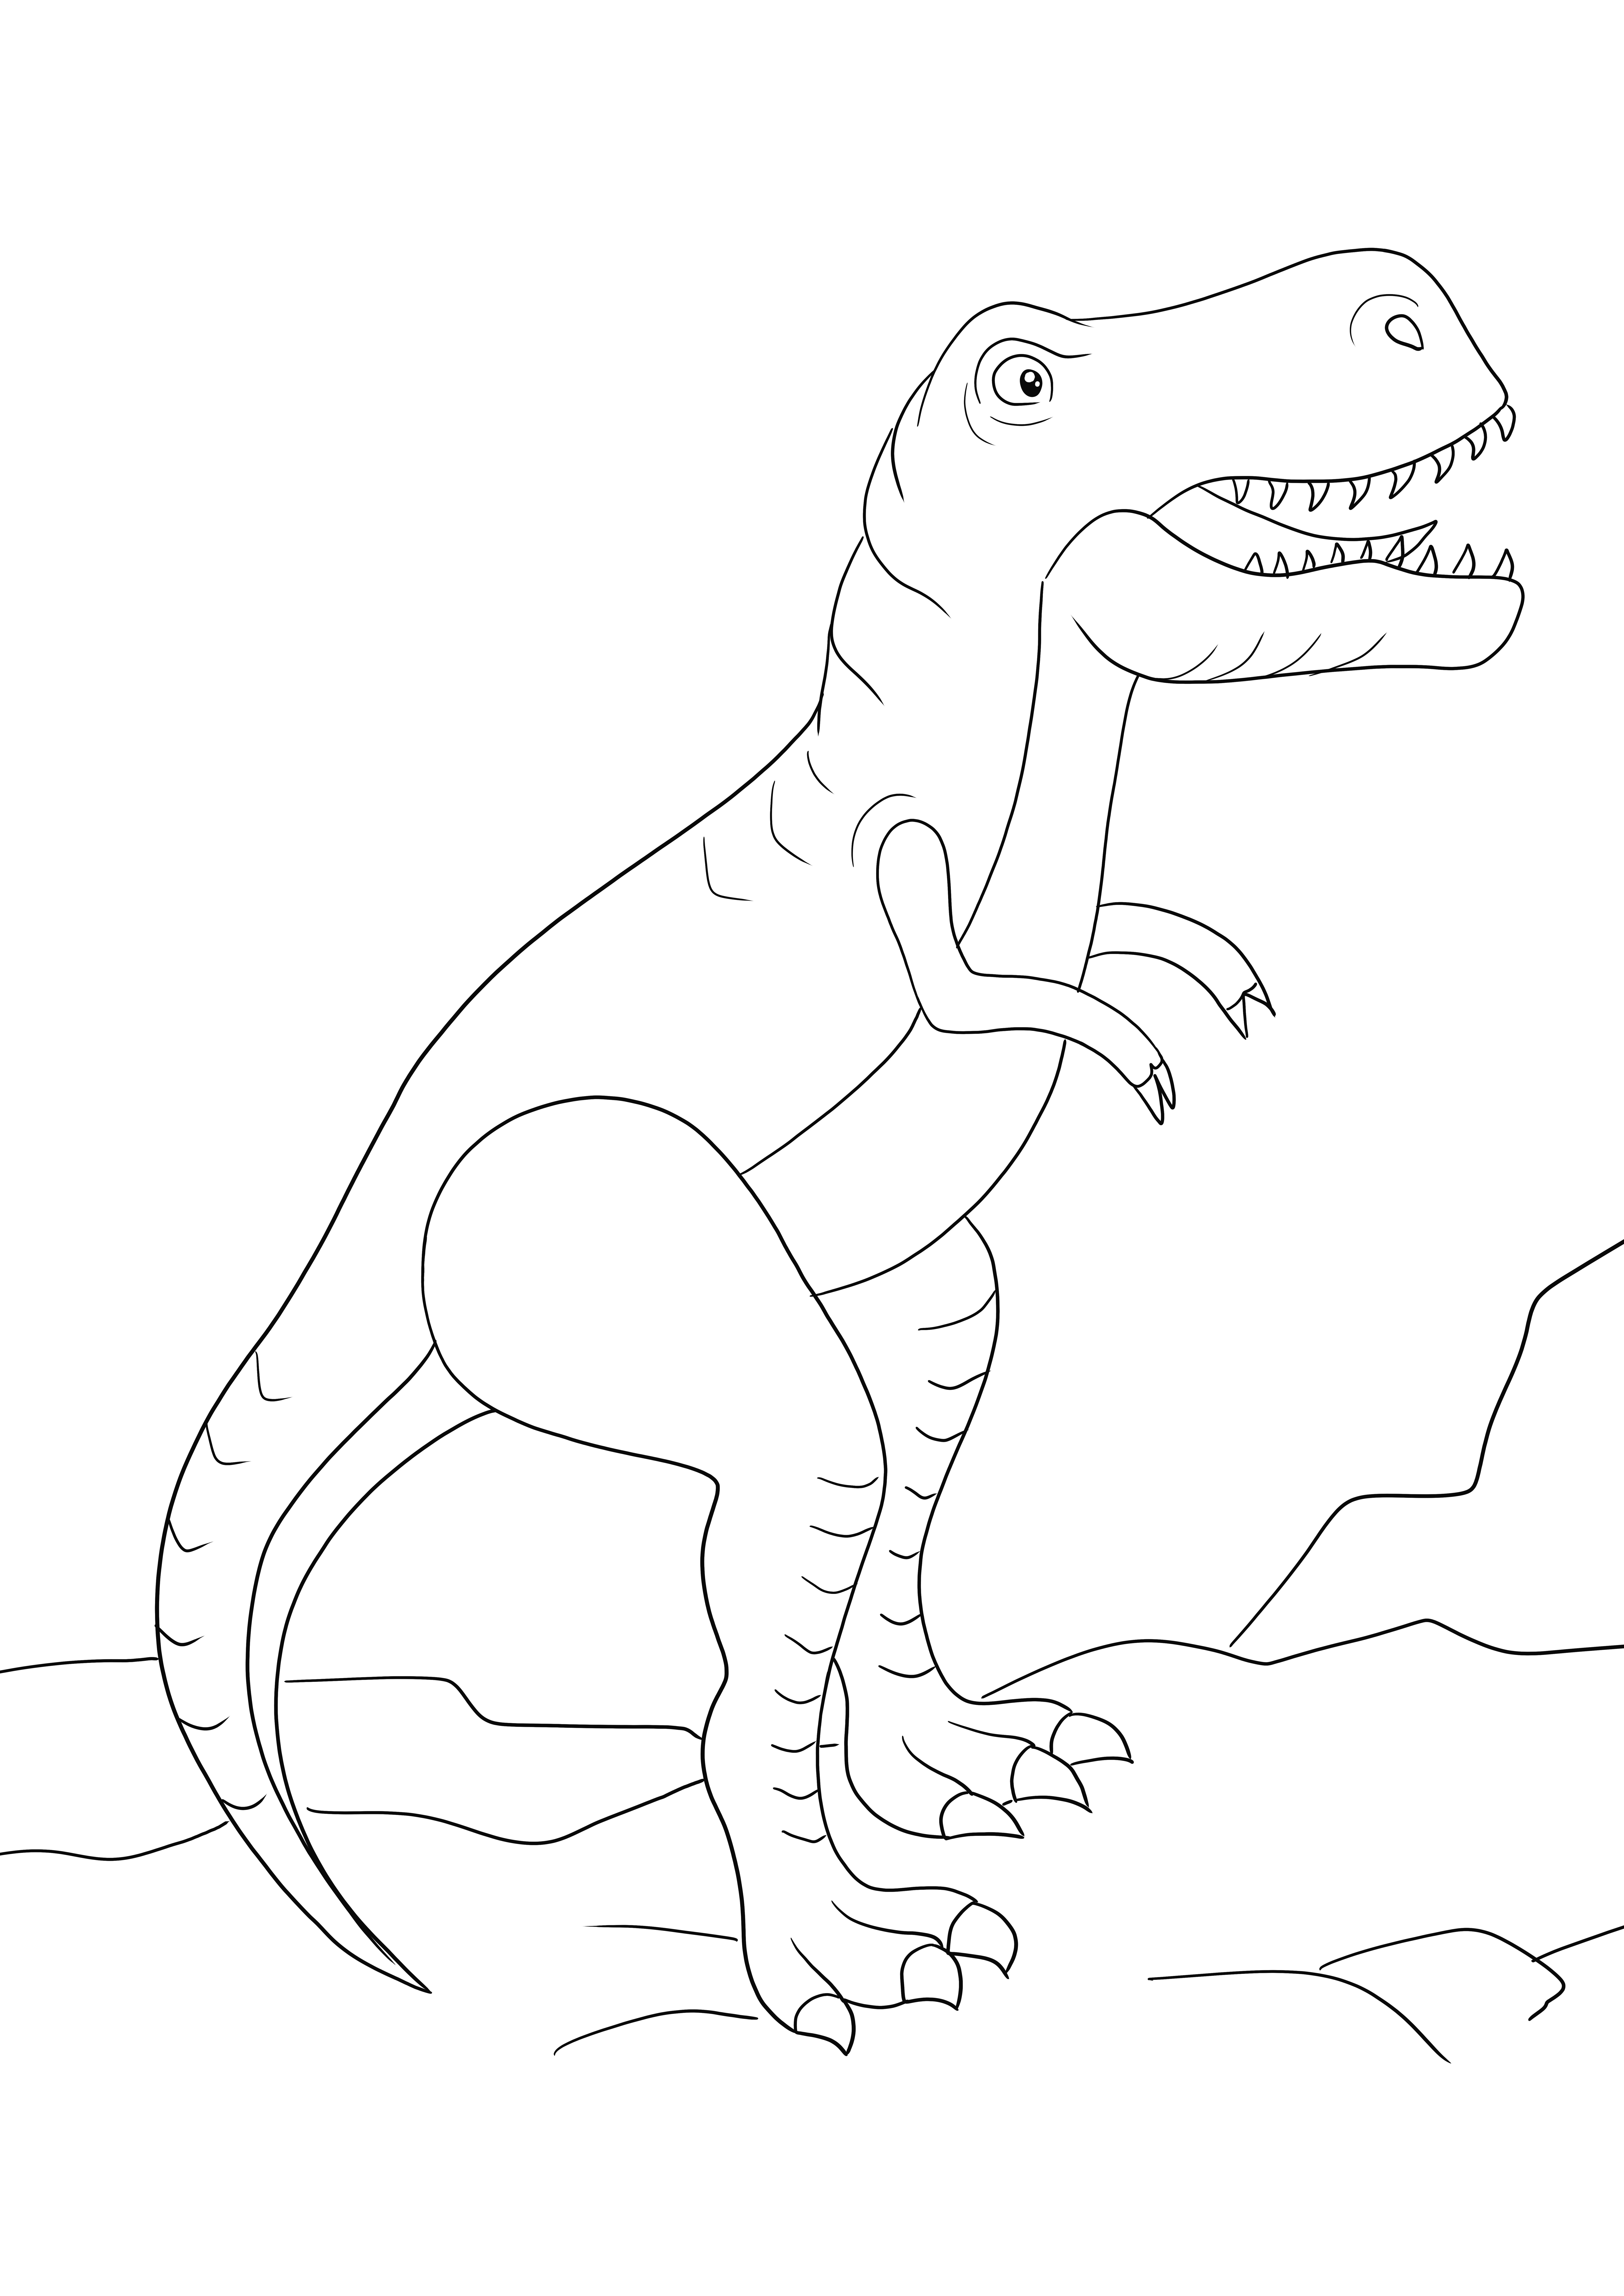 O desen de colorat care poate fi descărcată cu un mare T-Rex gratuit și colorat